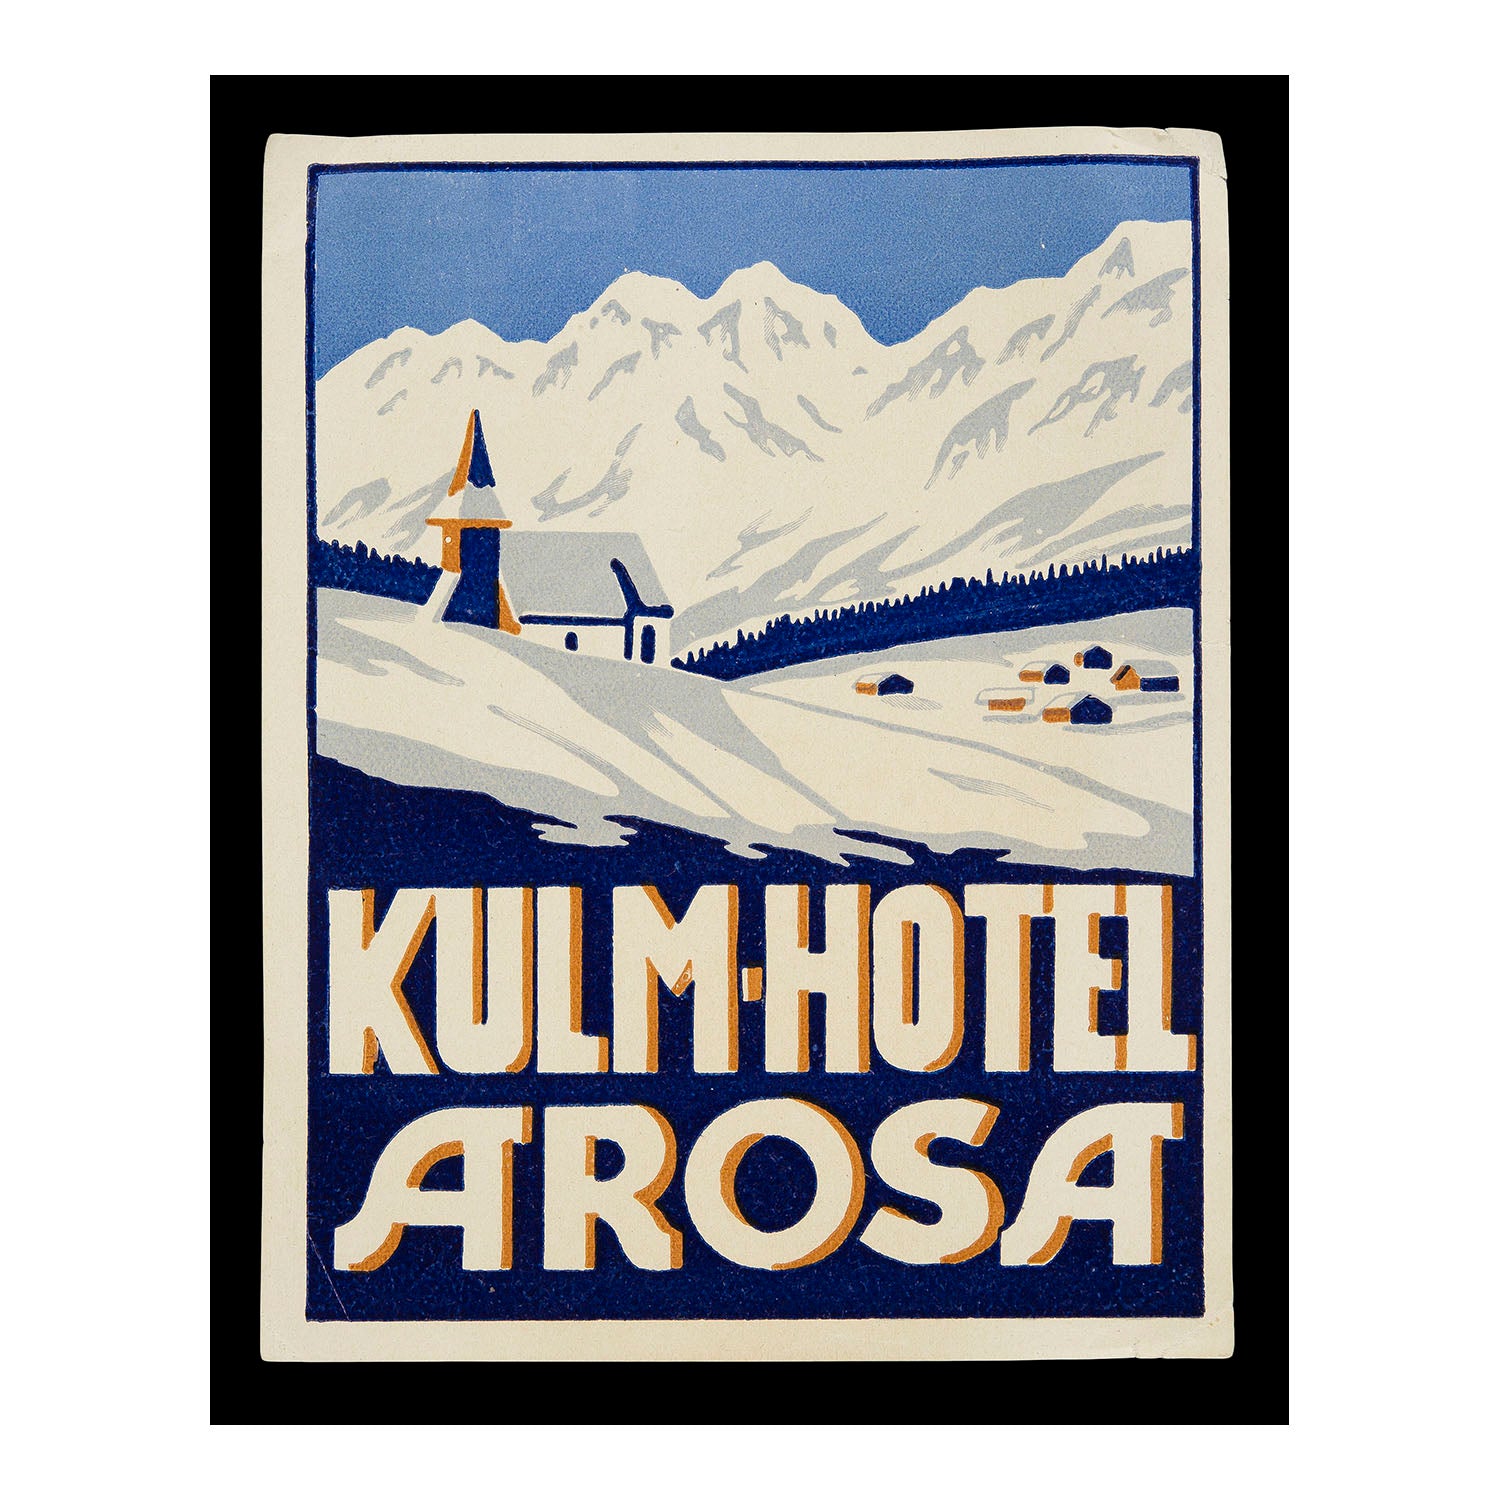 Kulm Hotel, Arosa (Luggage Label)